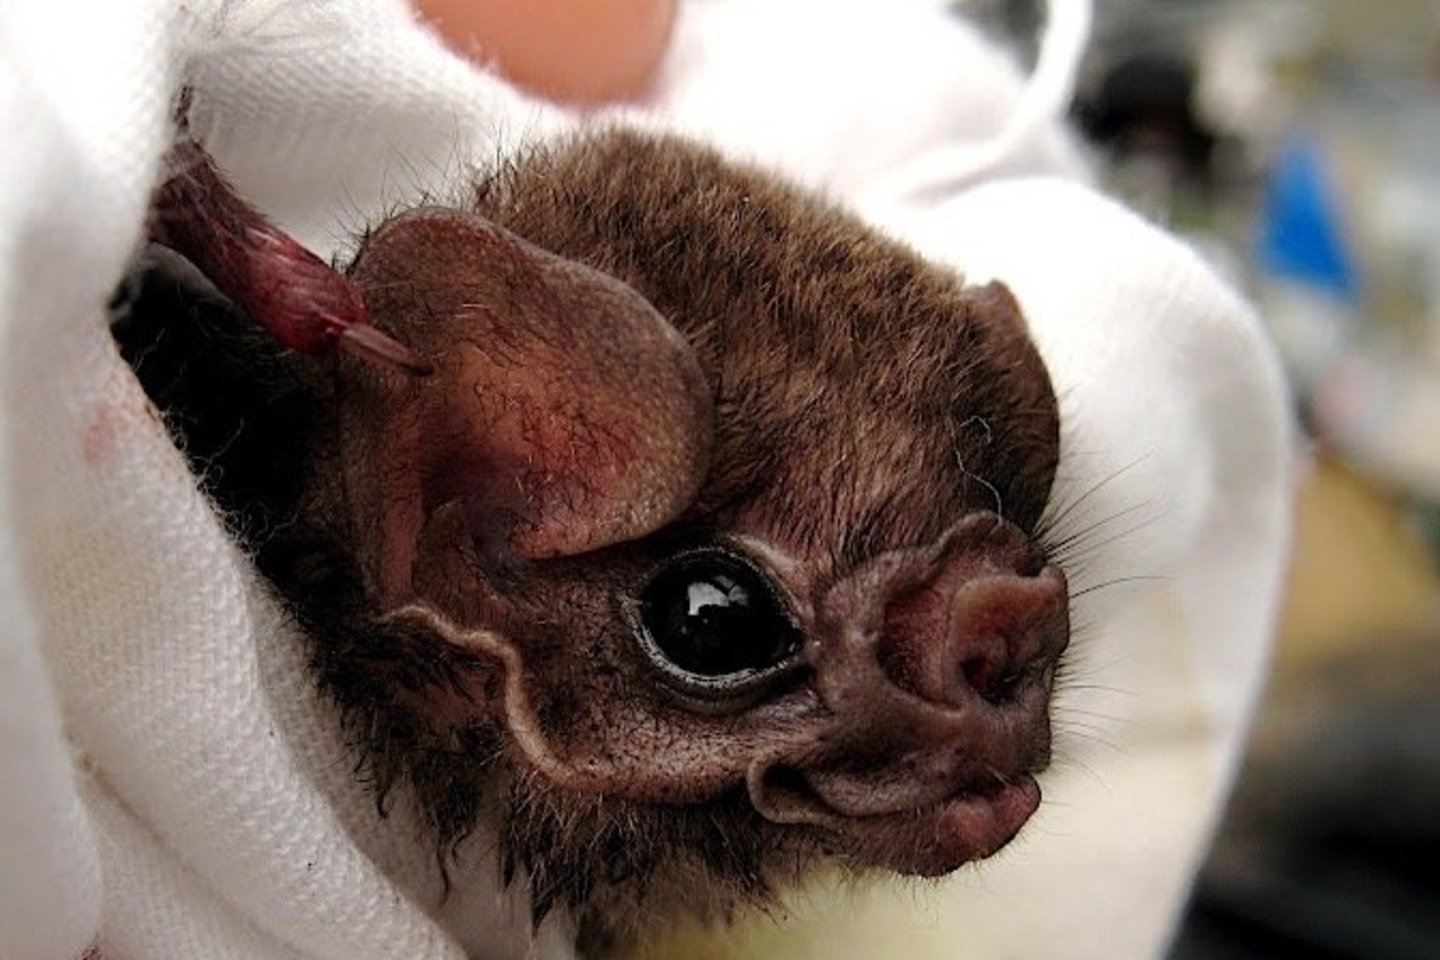  Plaukuotakojai vampyrai – šikšnosparniai, dažniausiai siurbiantys paukščių kraują.<br> Wikipedia nuotr.